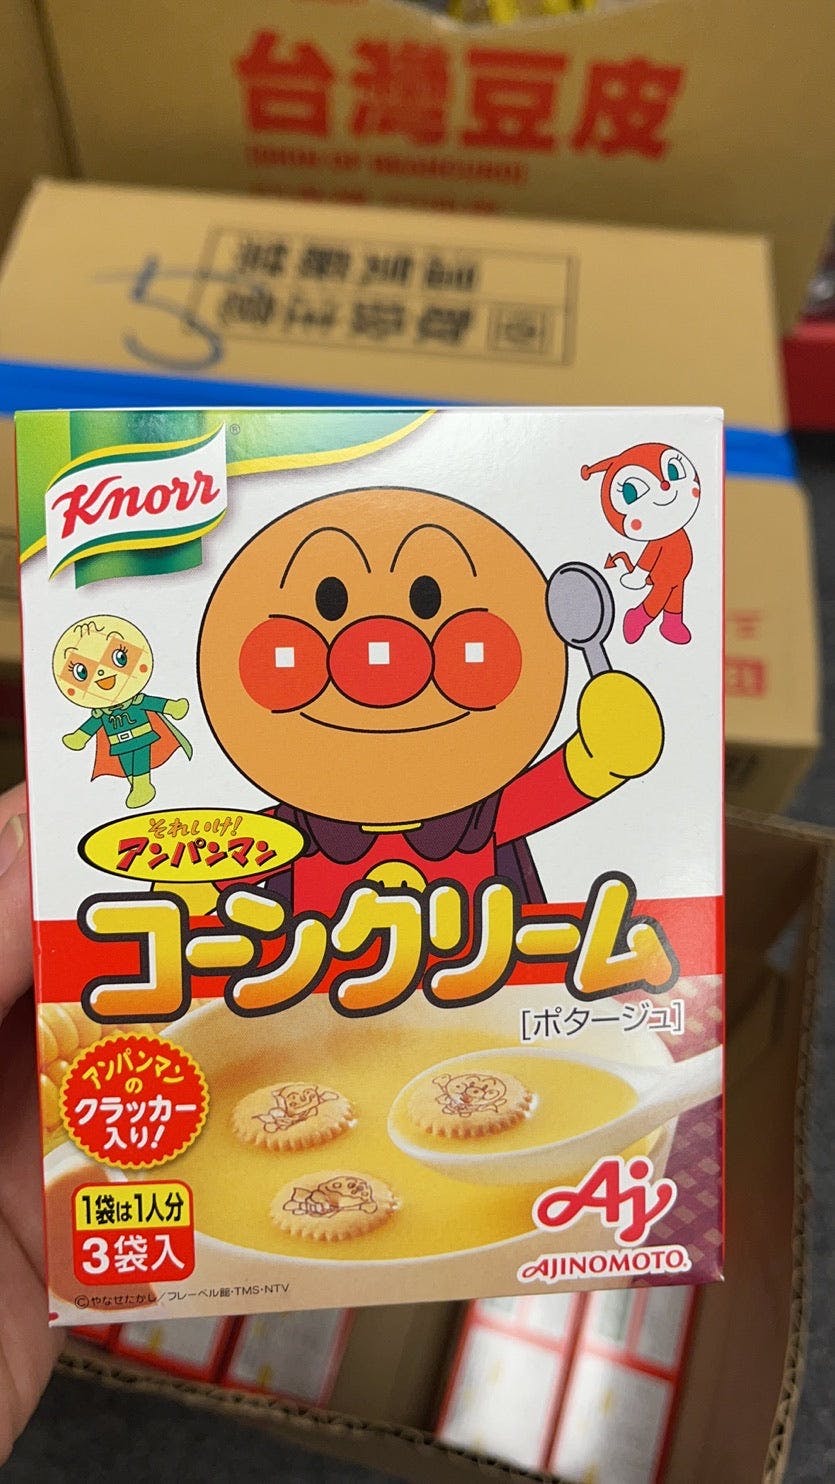 玉米奶油浓汤 日本第七大食品企业味之素 Japanese Knorr Anpanman Corn Cream Soup, 2 oz (59g)【日本进口】